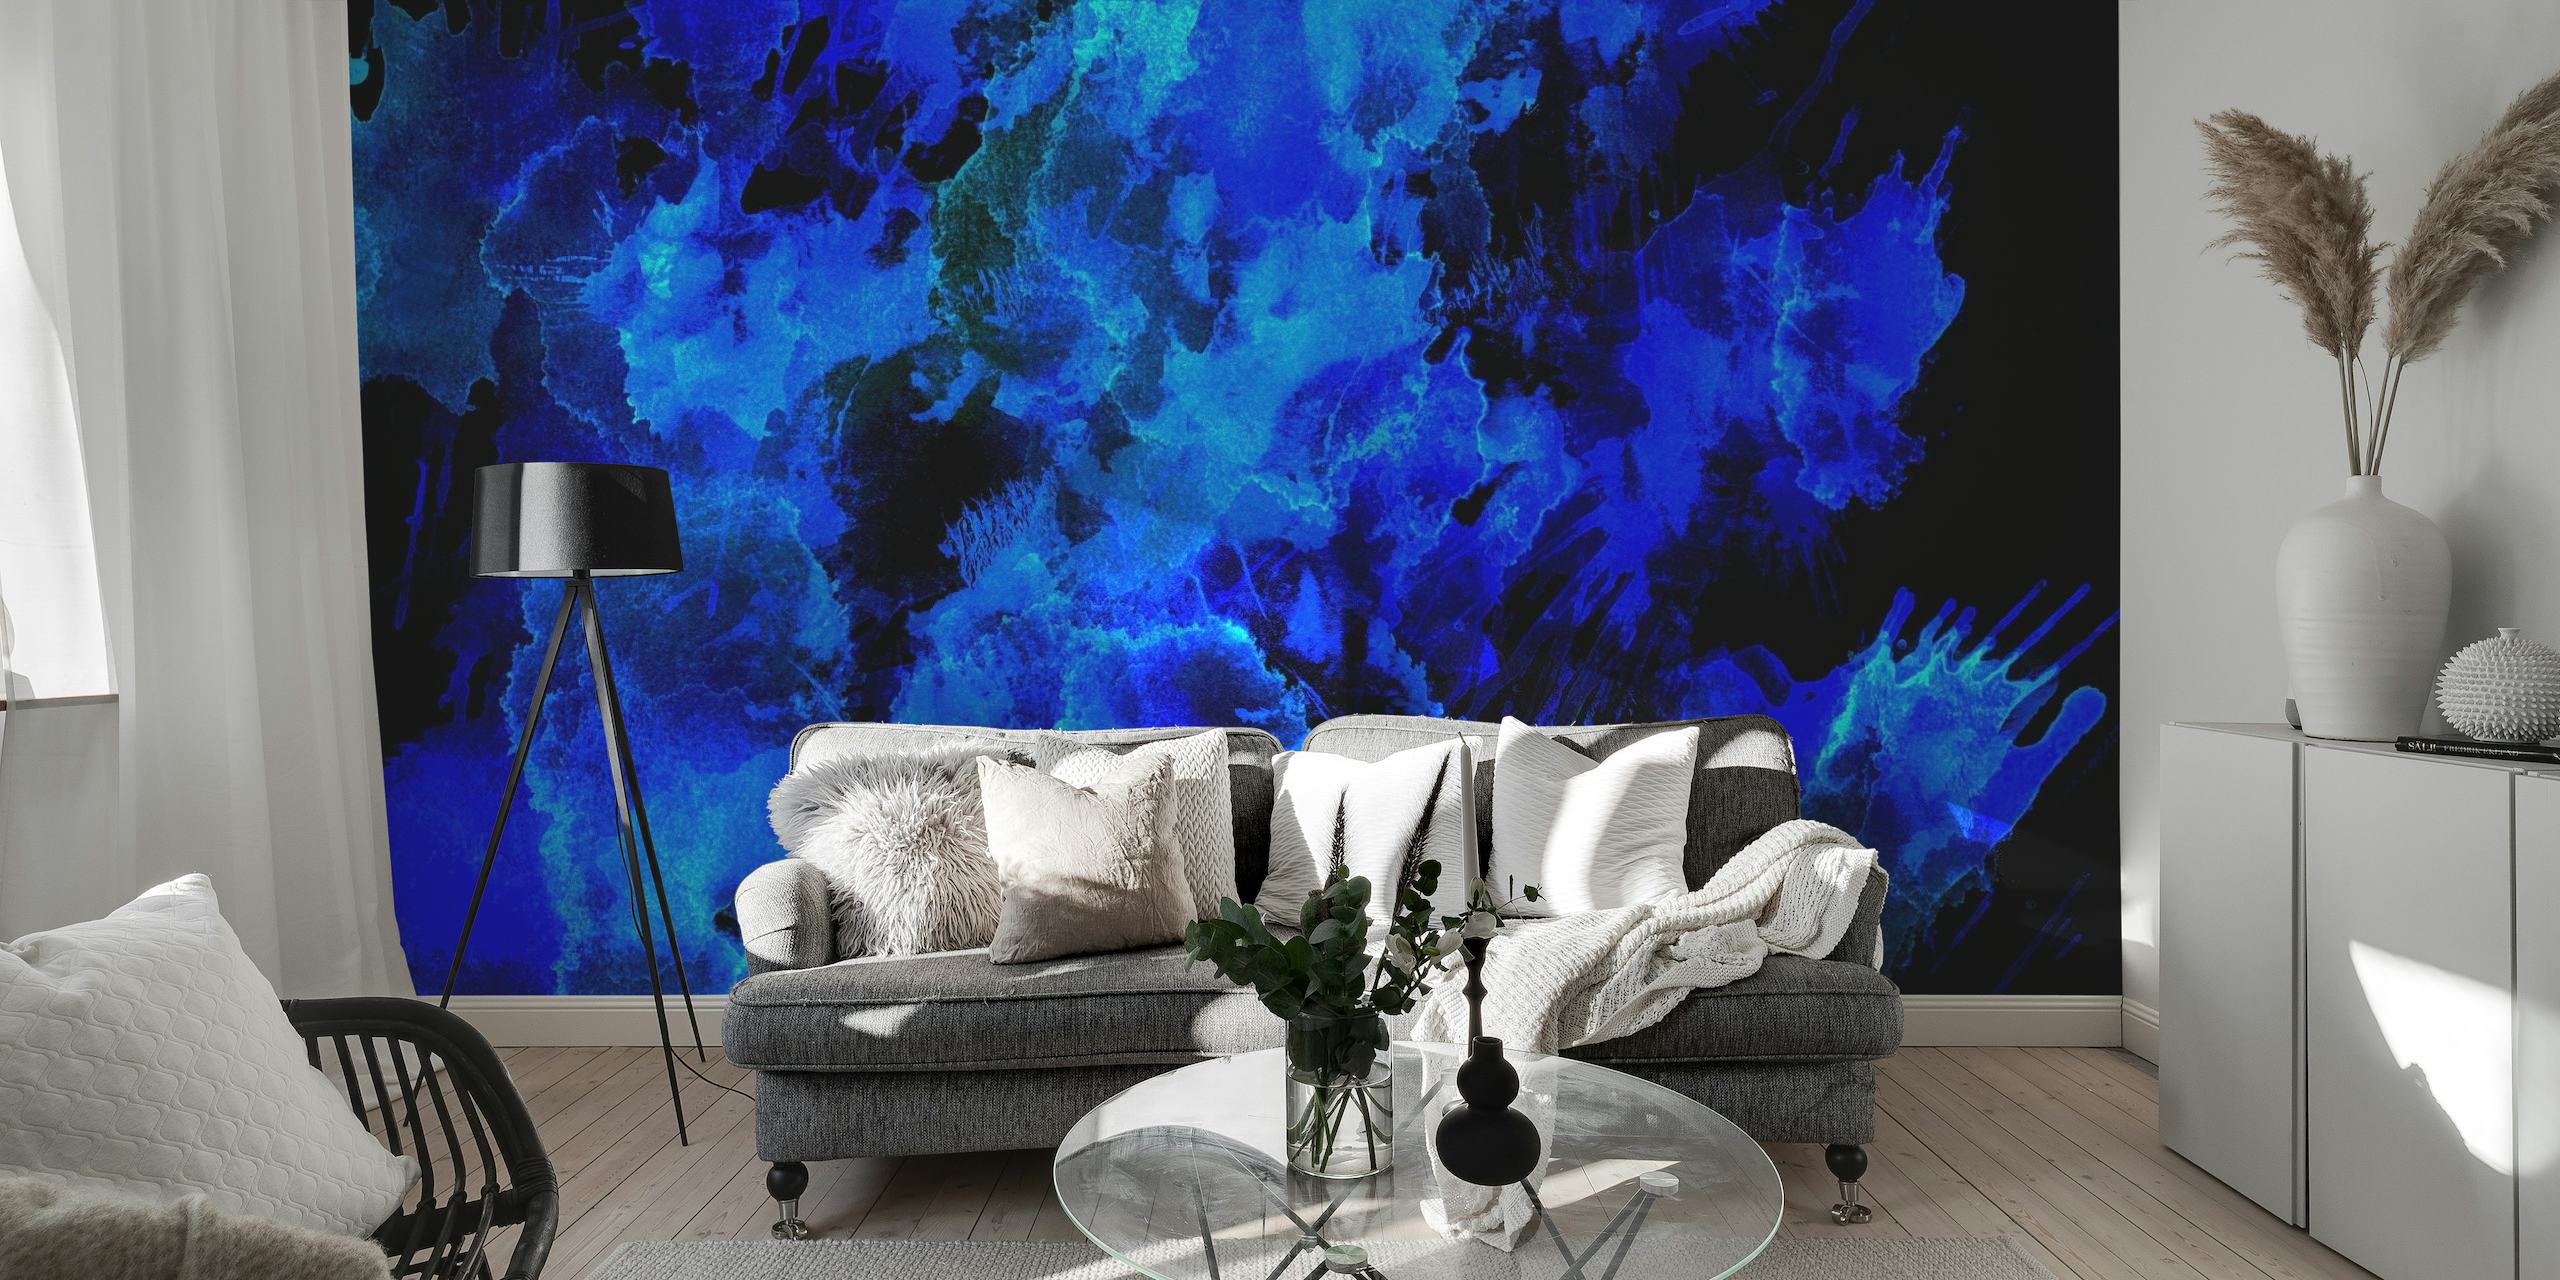 Abstrakt vægmaleri i blå nuancer, der påkalder skønheden ved nattehimlen eller havets dybder